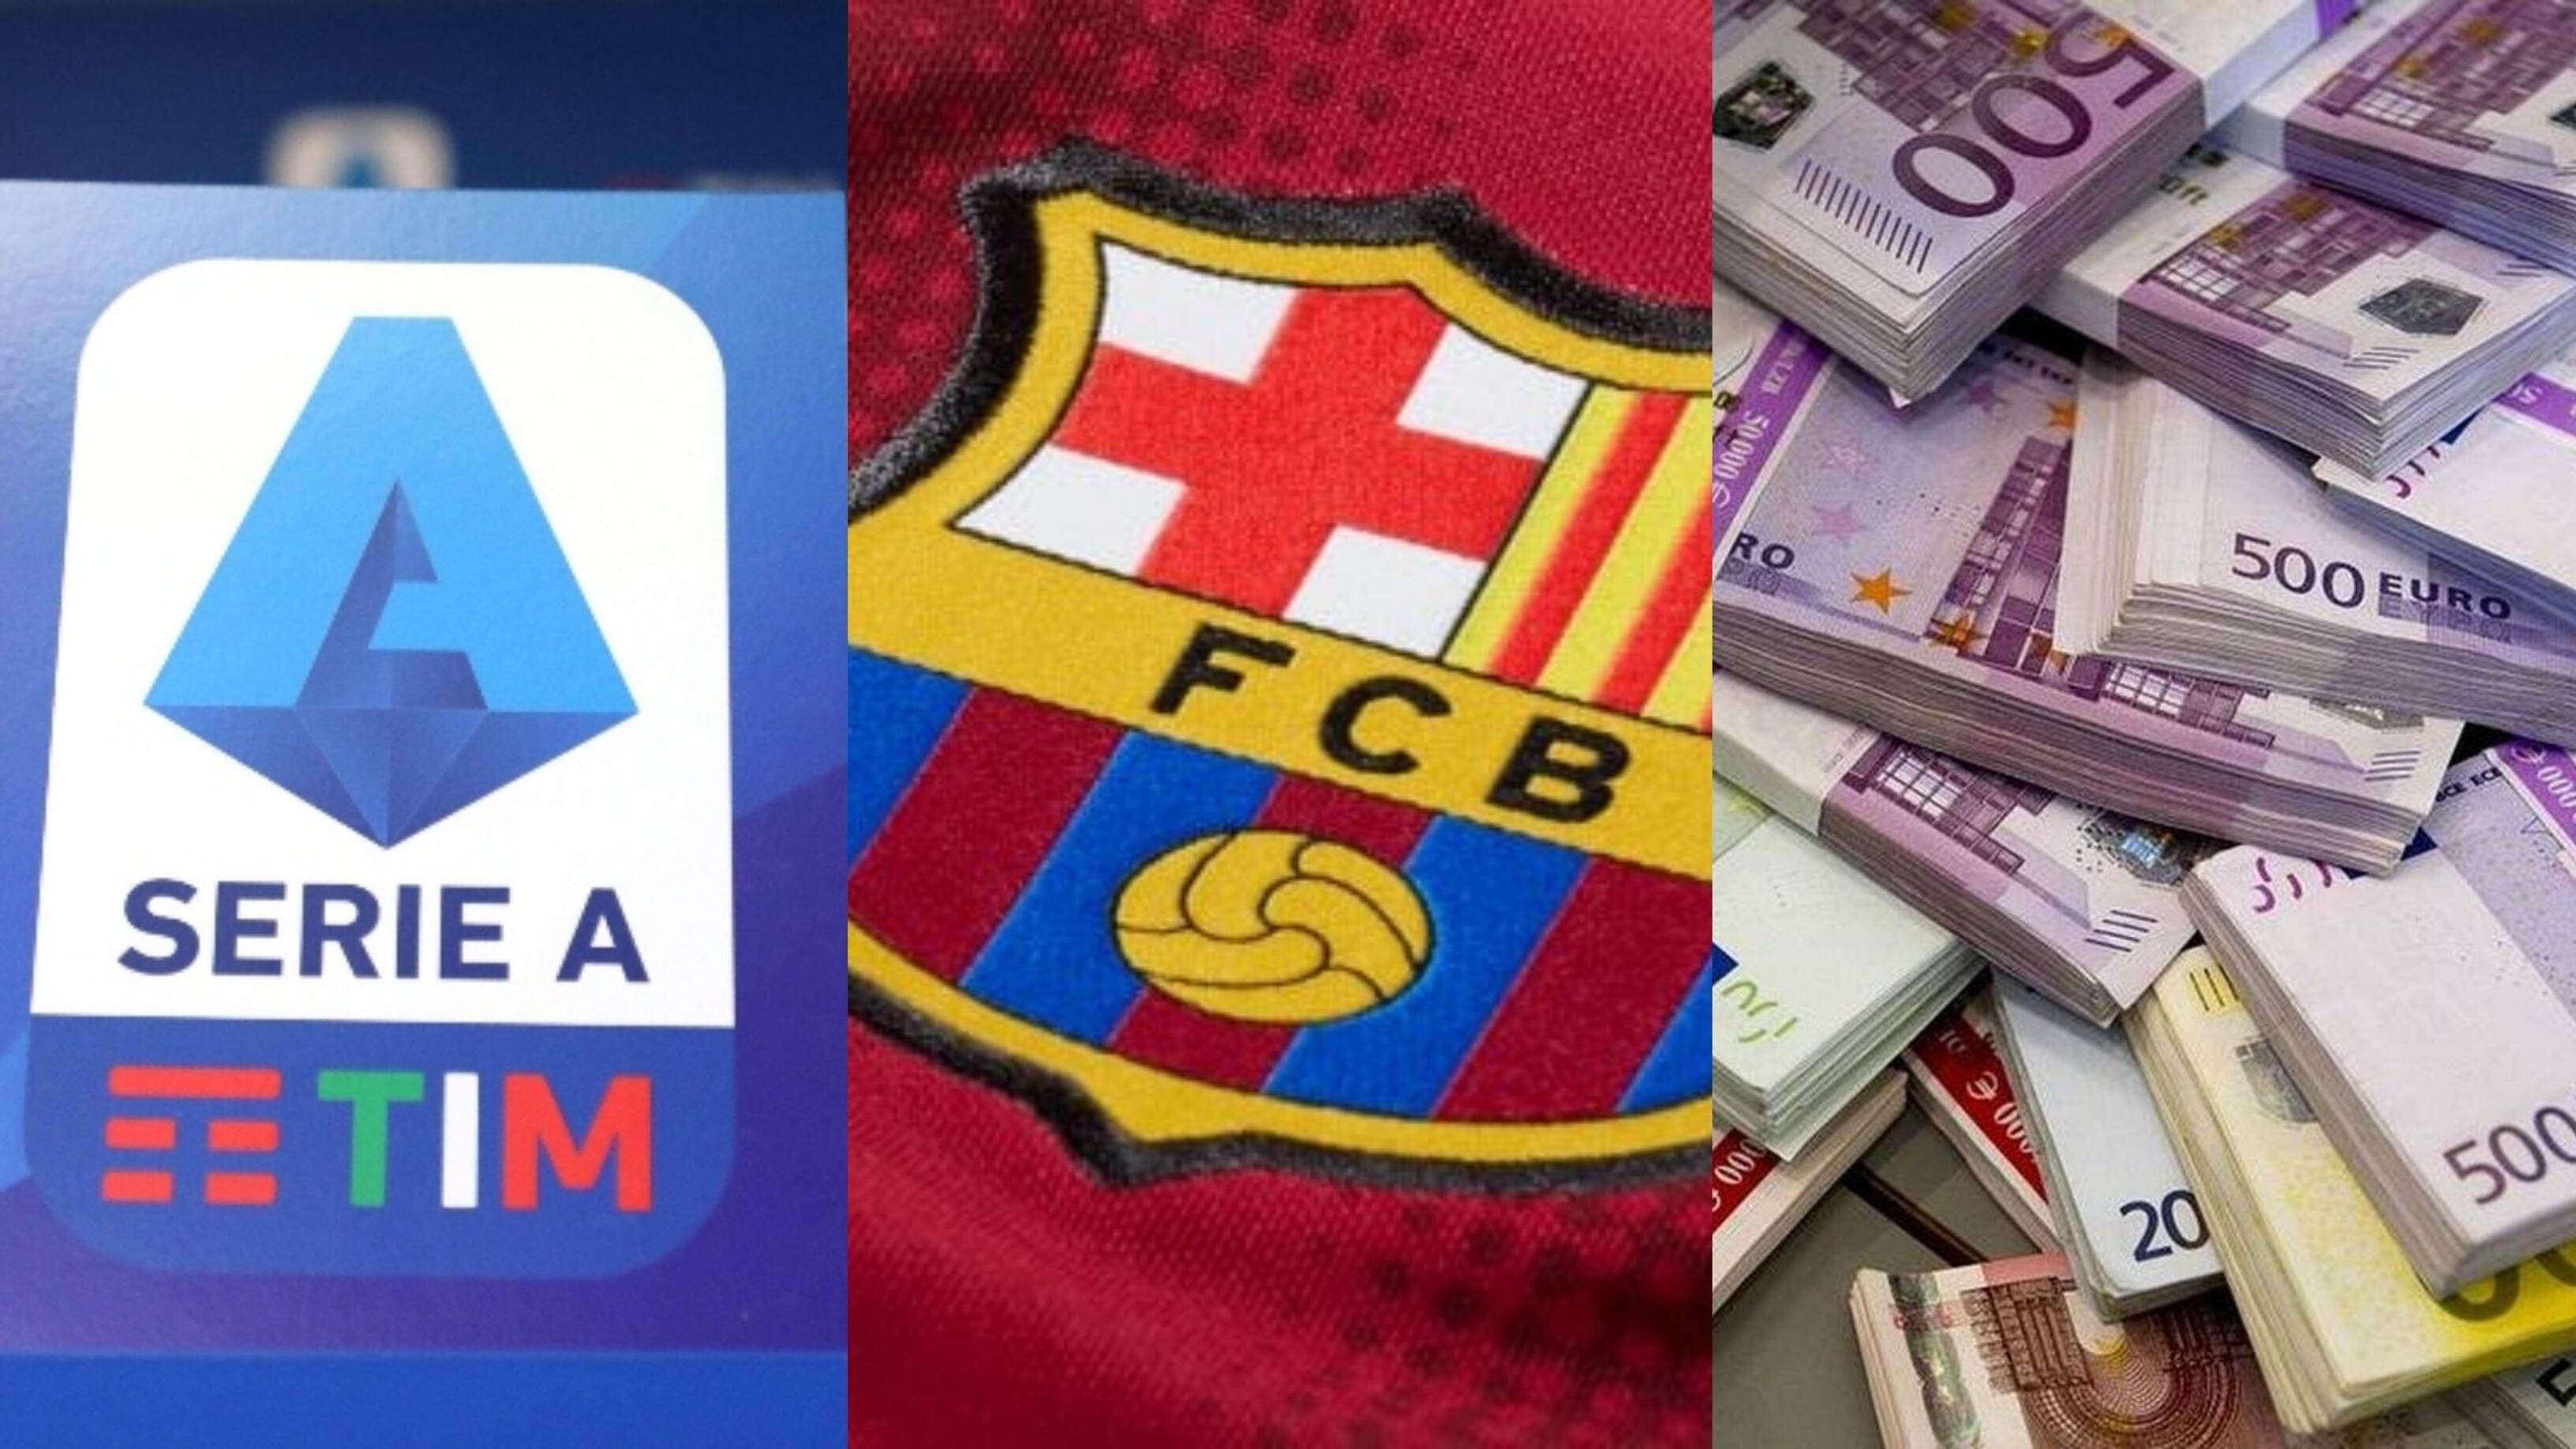 El Barcelona lo largaría a la Serie A, el tronco que salvará su economía